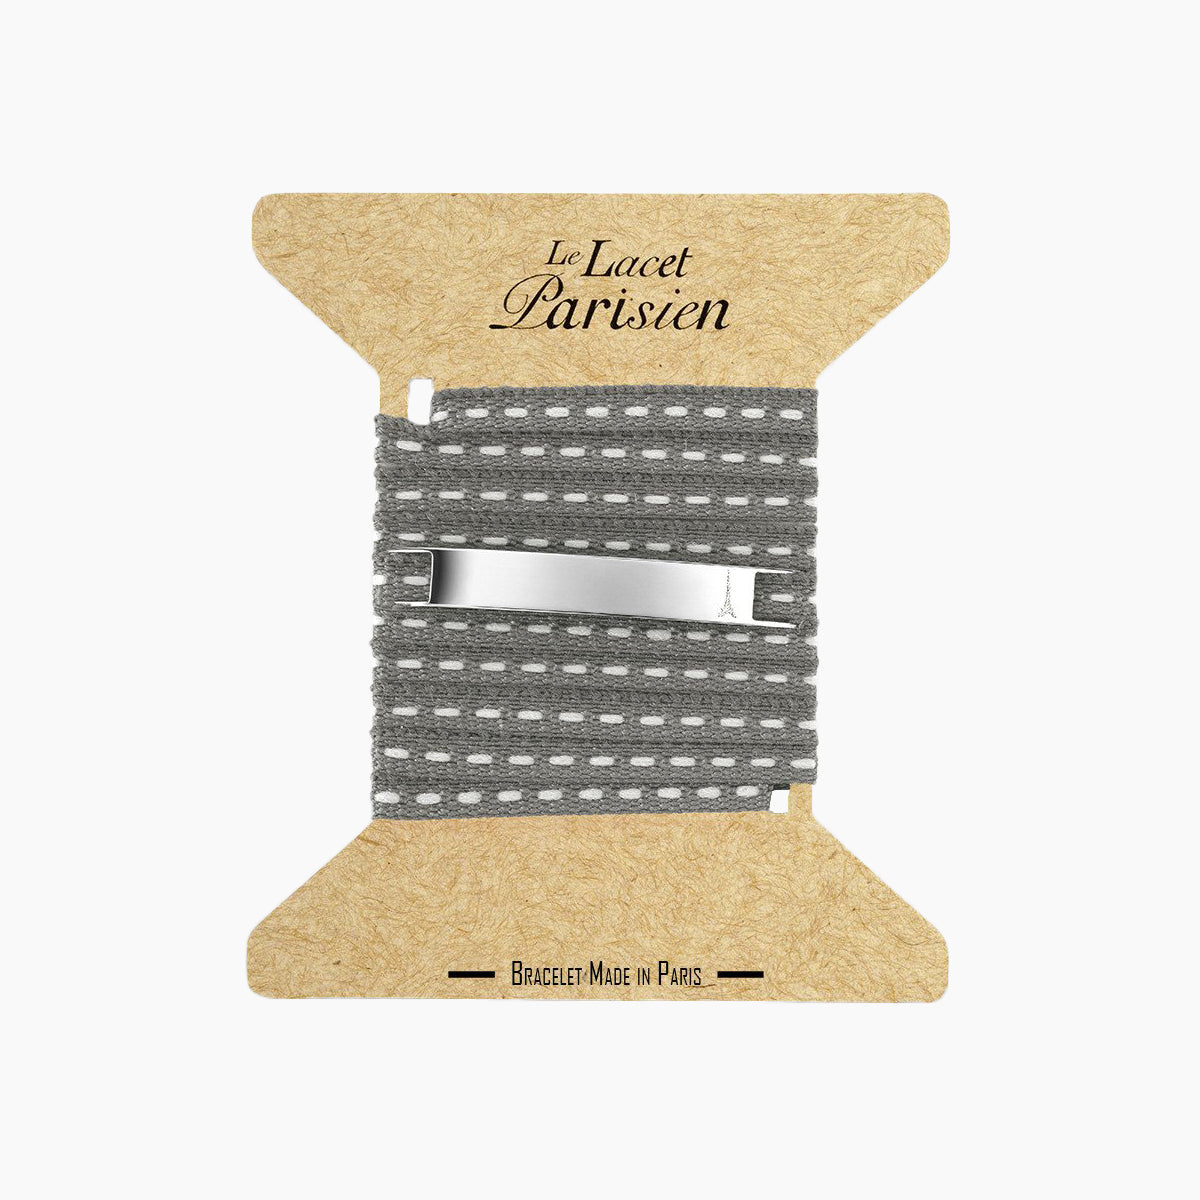 Lacet porte-gobelet personnalisé - Oscar, fabrication de bracelets